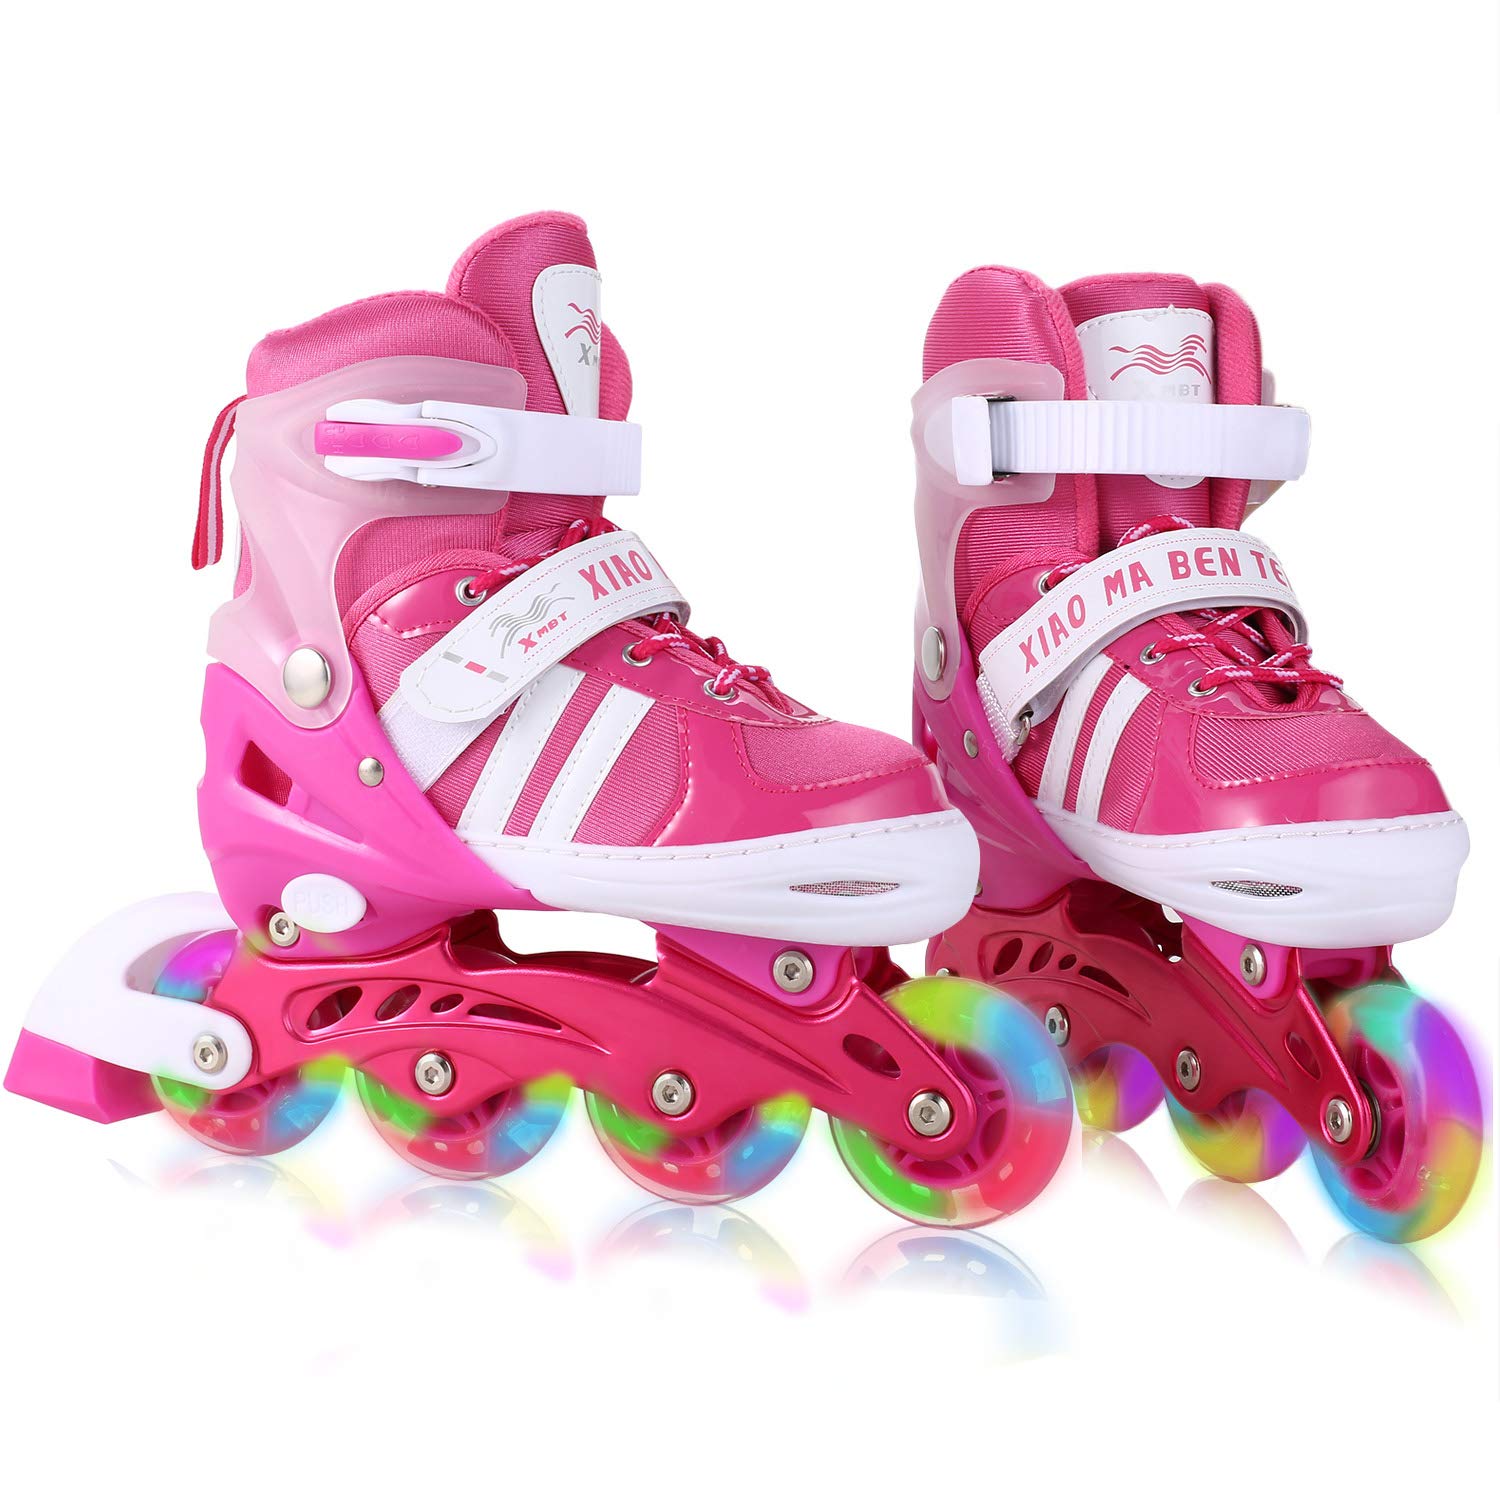 Dongchuan Inline Skates Women/Men Adjustable Size 5-8 Kid 12J-2/2-5 for Boys Girls Aggressive Roller Skates